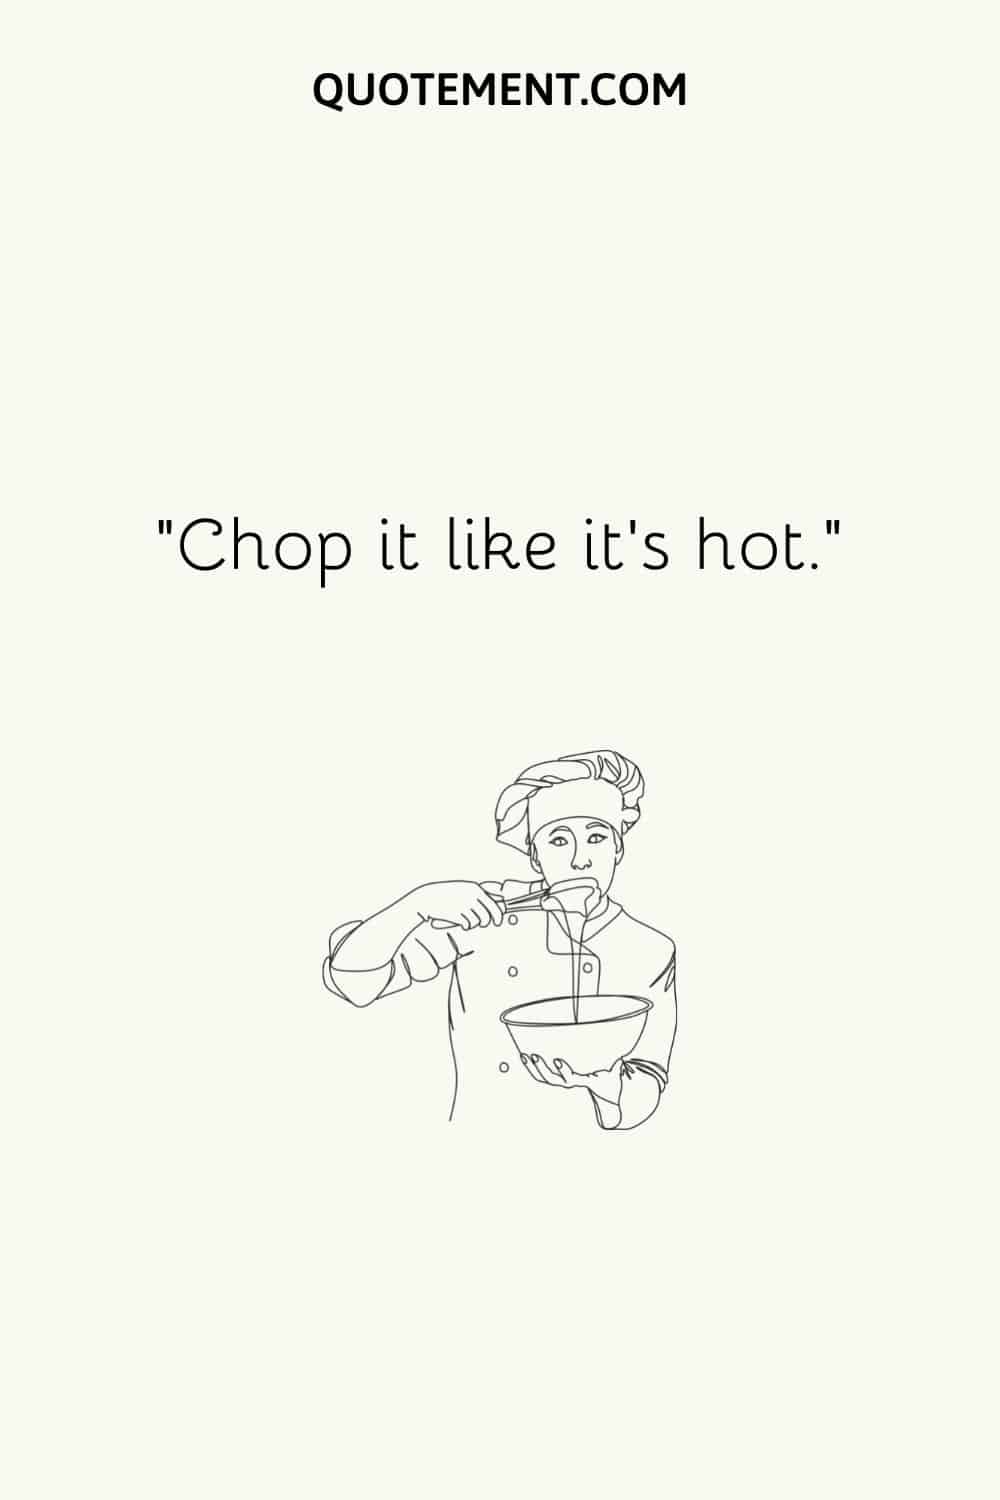 Chop it like it’s hot